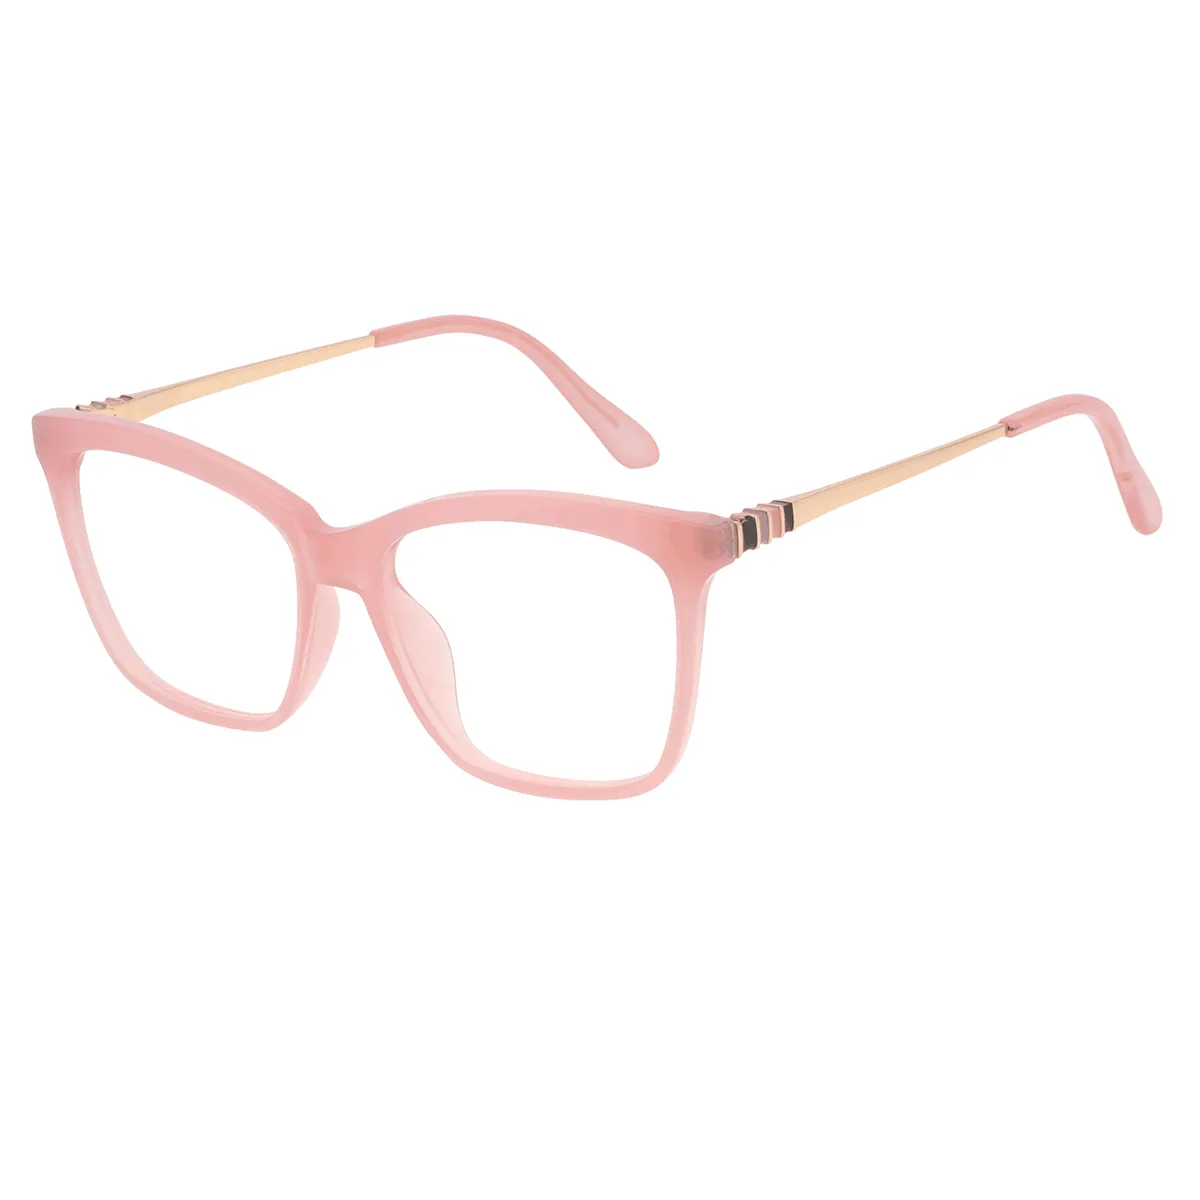 Appert - Square Pink Glasses for Men & Women - EFE